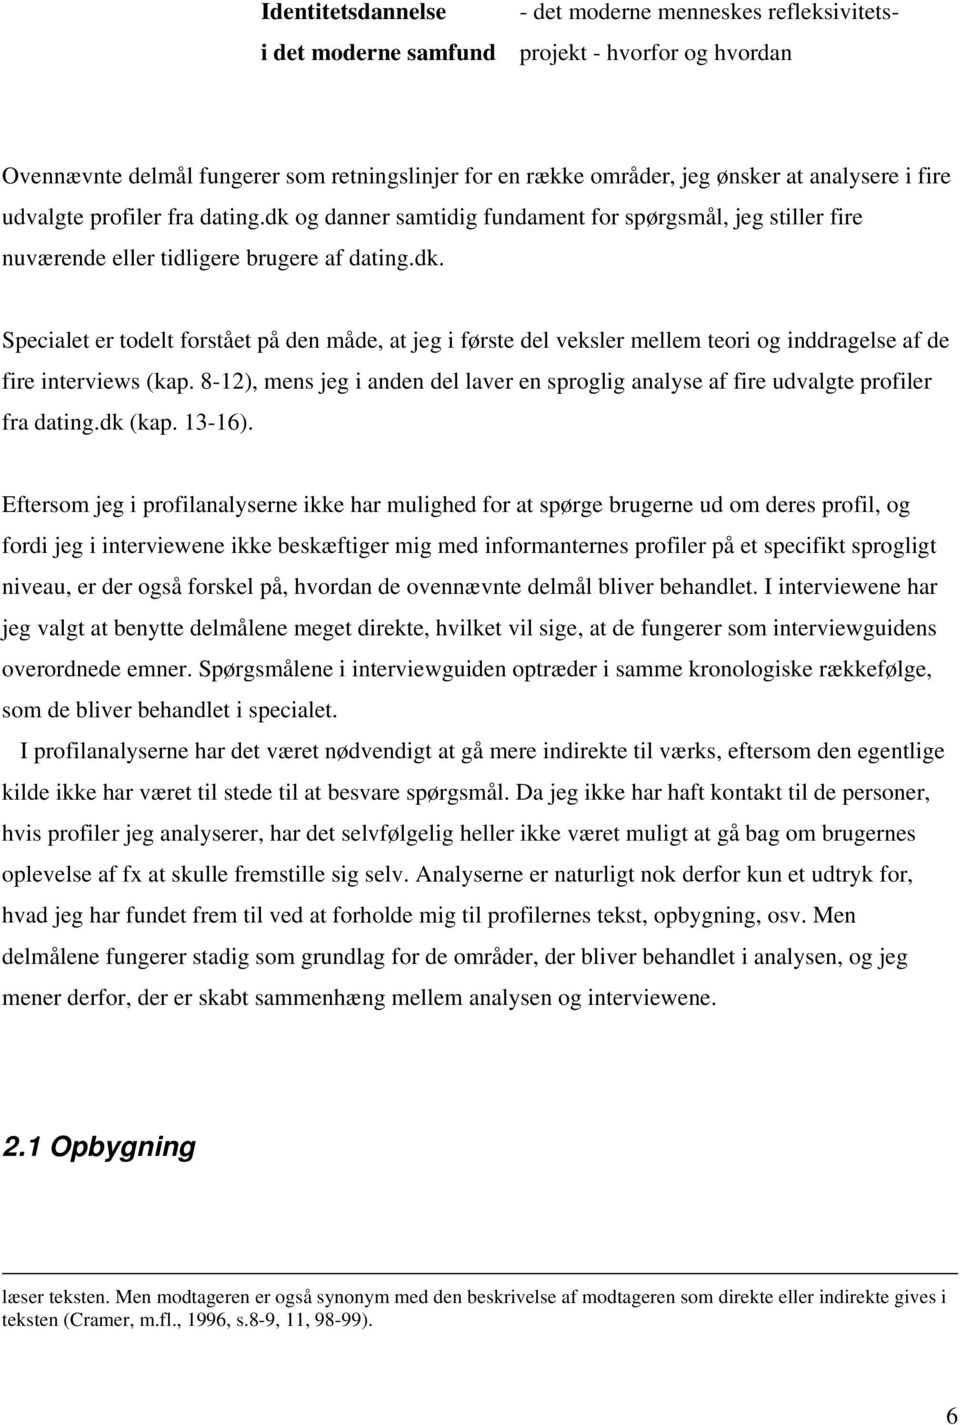 8-12), mens jeg i anden del laver en sproglig analyse af fire udvalgte profiler fra dating.dk (kap. 13-16).